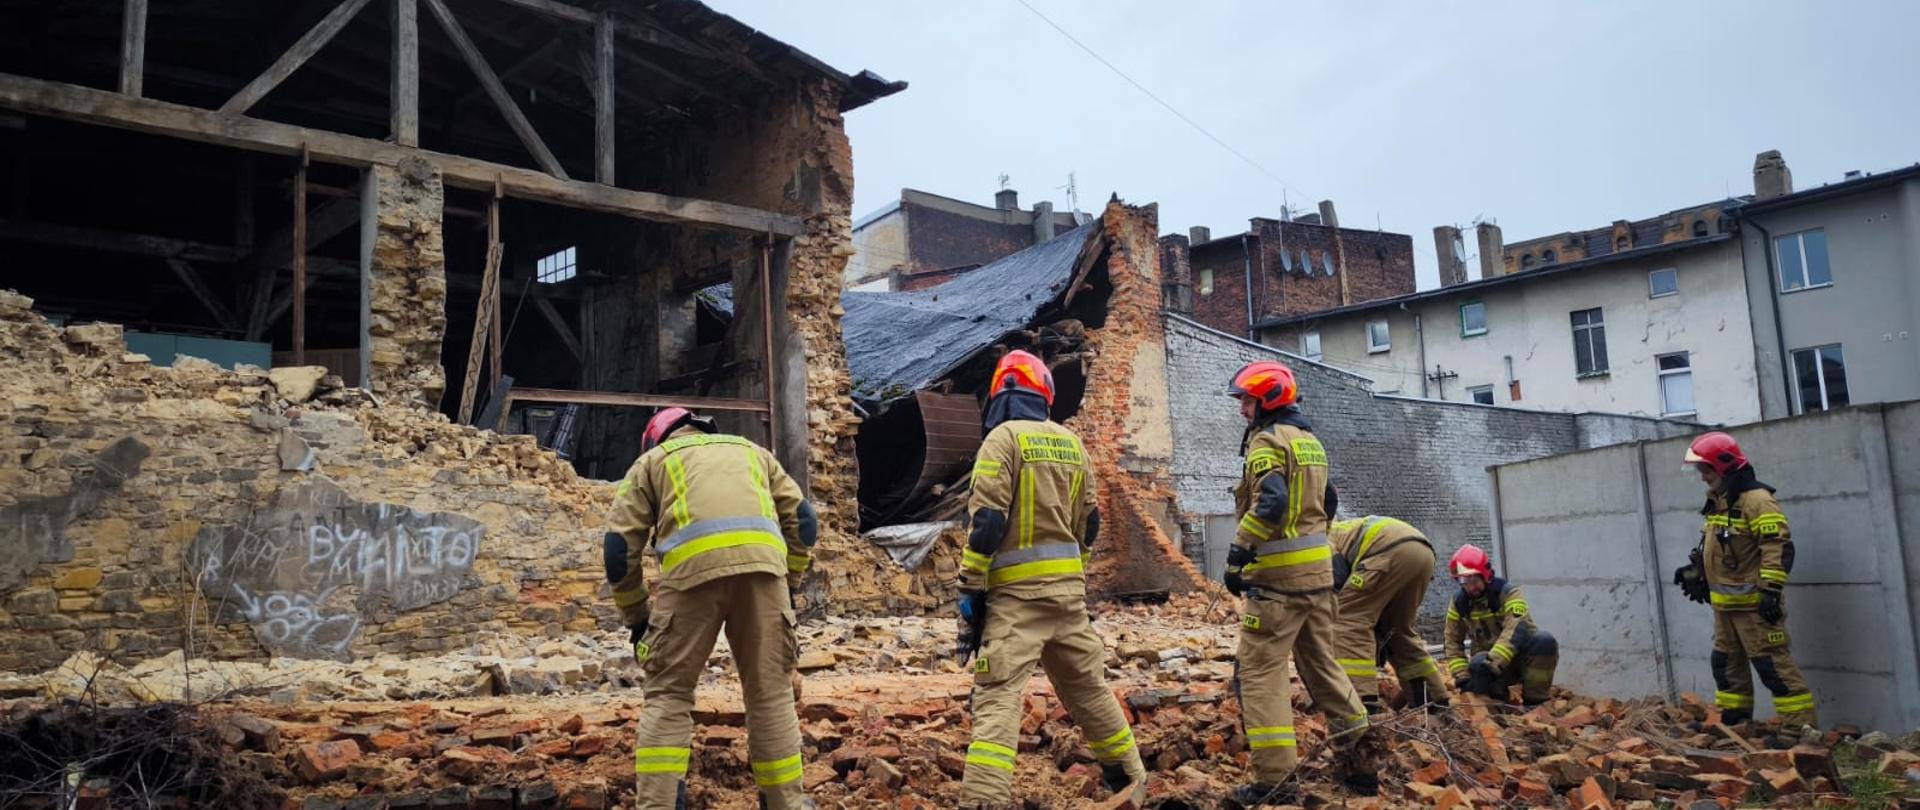 Na pierwszym planie sześciu strażaków przeszukujących gruzowisko, w tle widoczny budynek w którym runęła ściana.